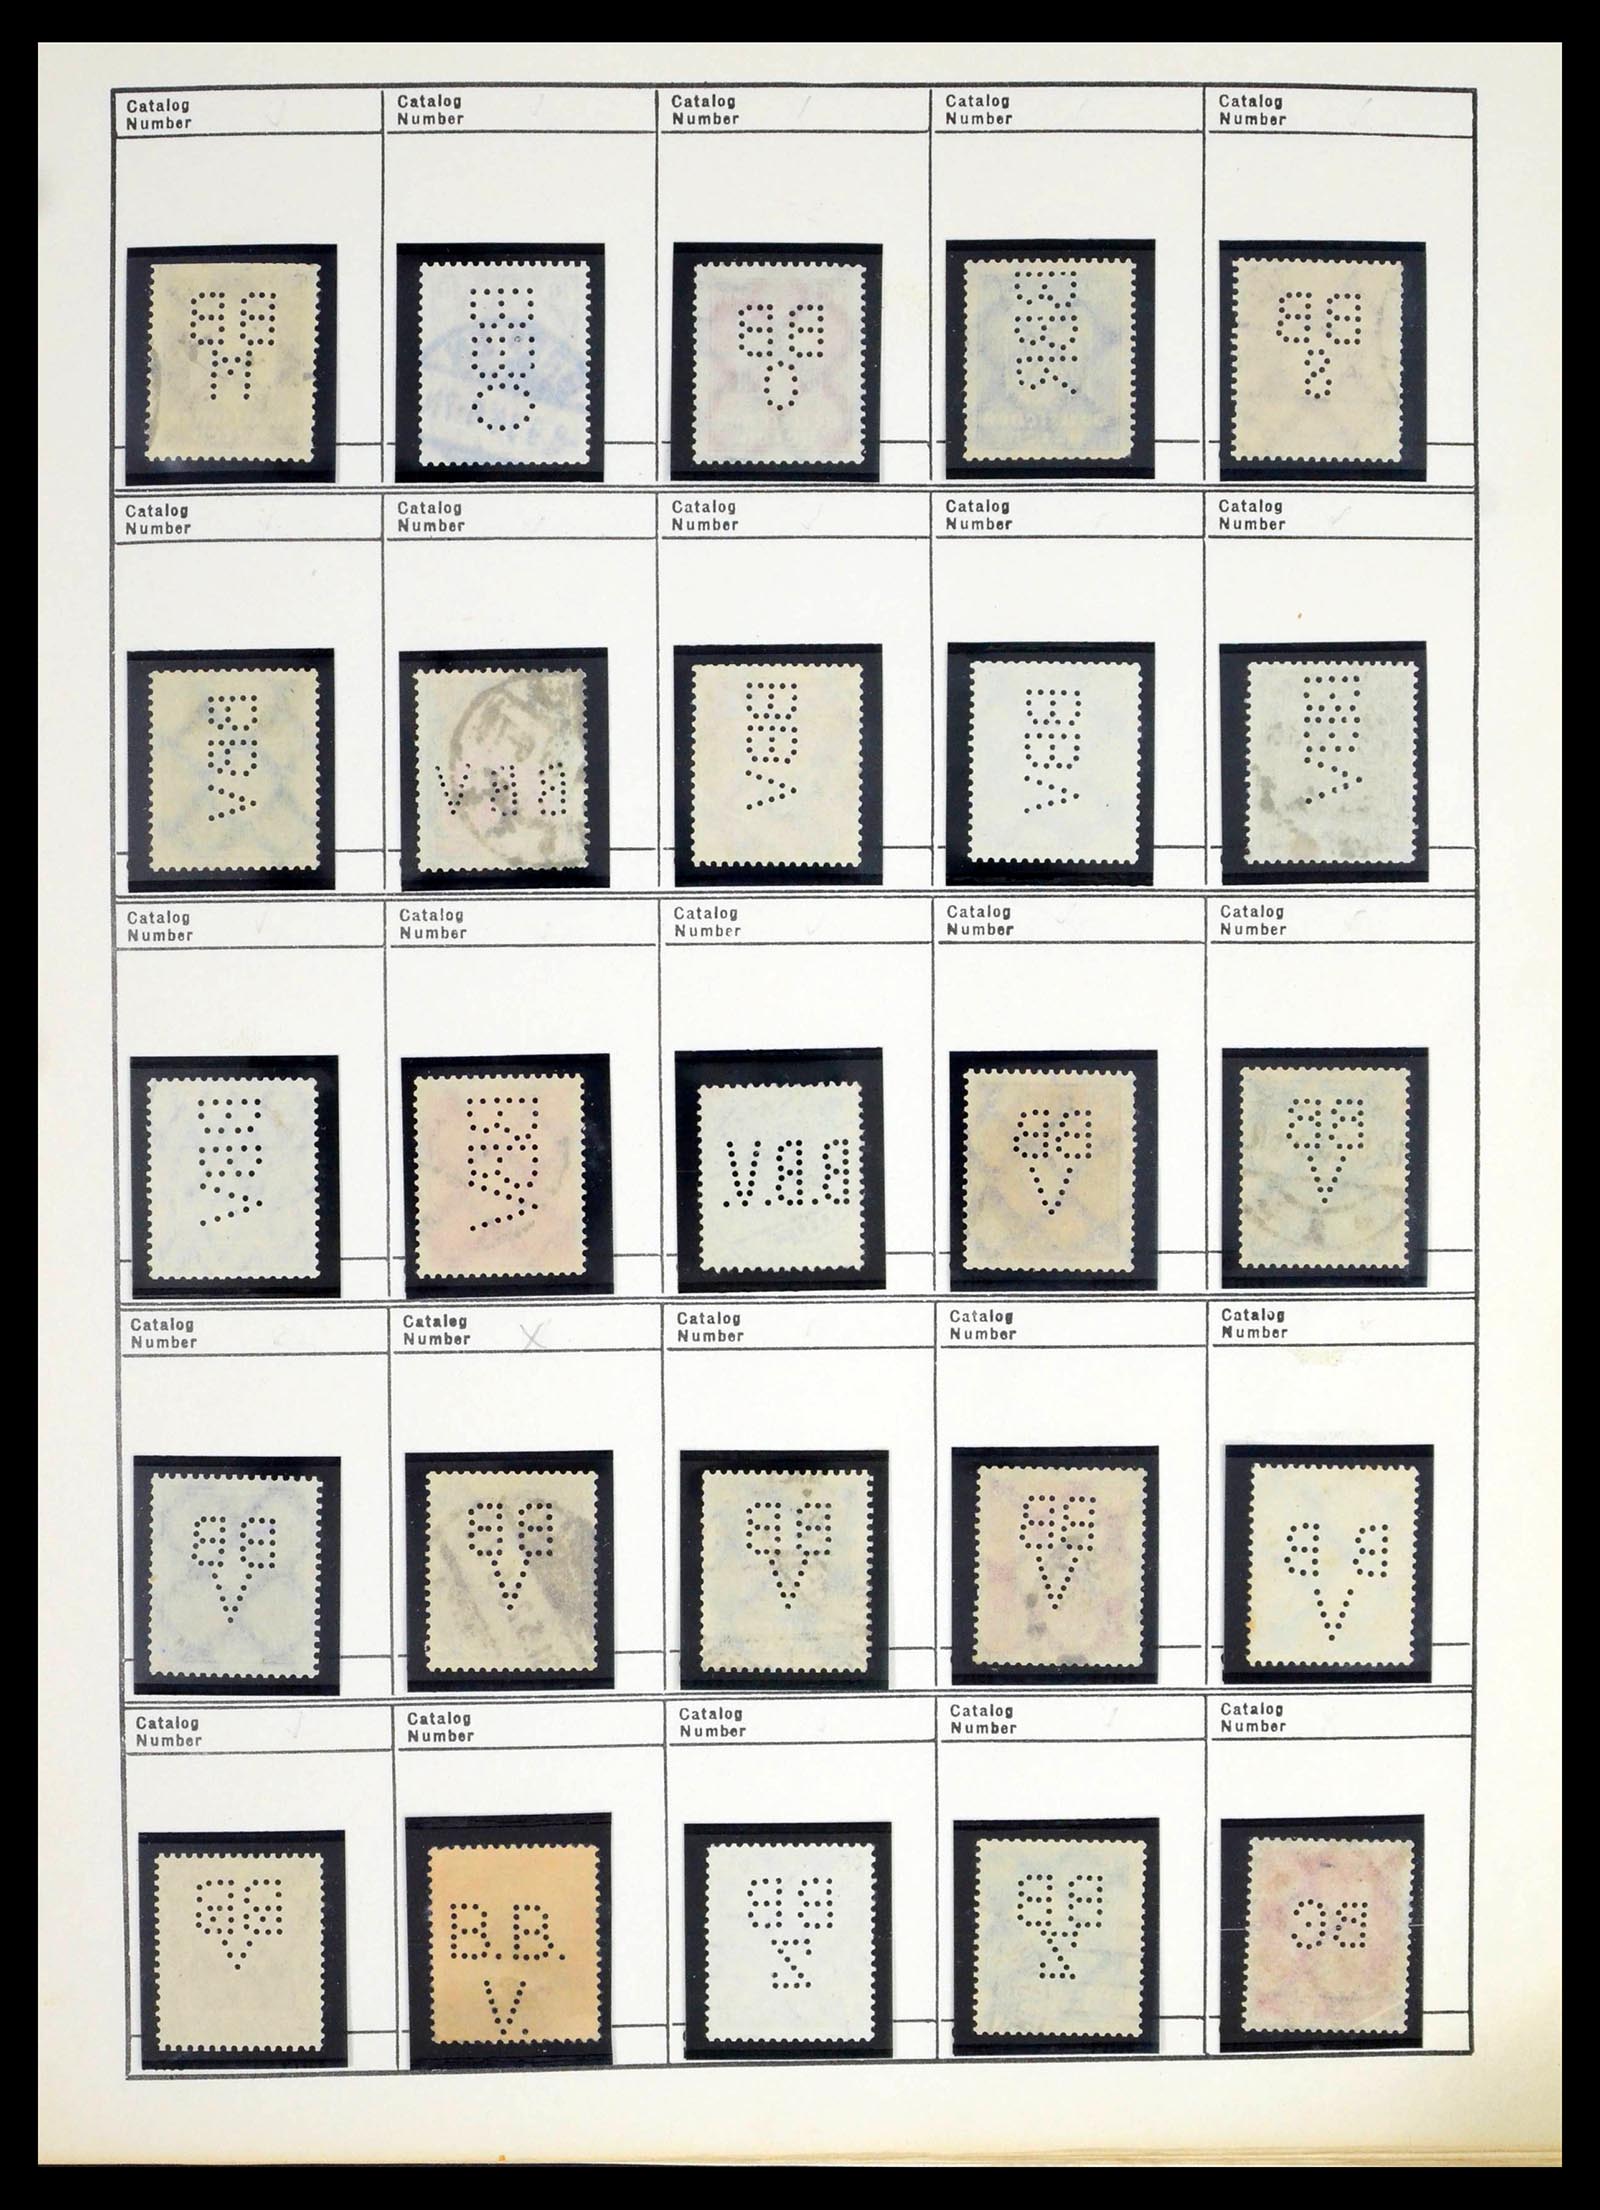 39480 0056 - Stamp collection 39480 German Reich perfins 1880-1955.